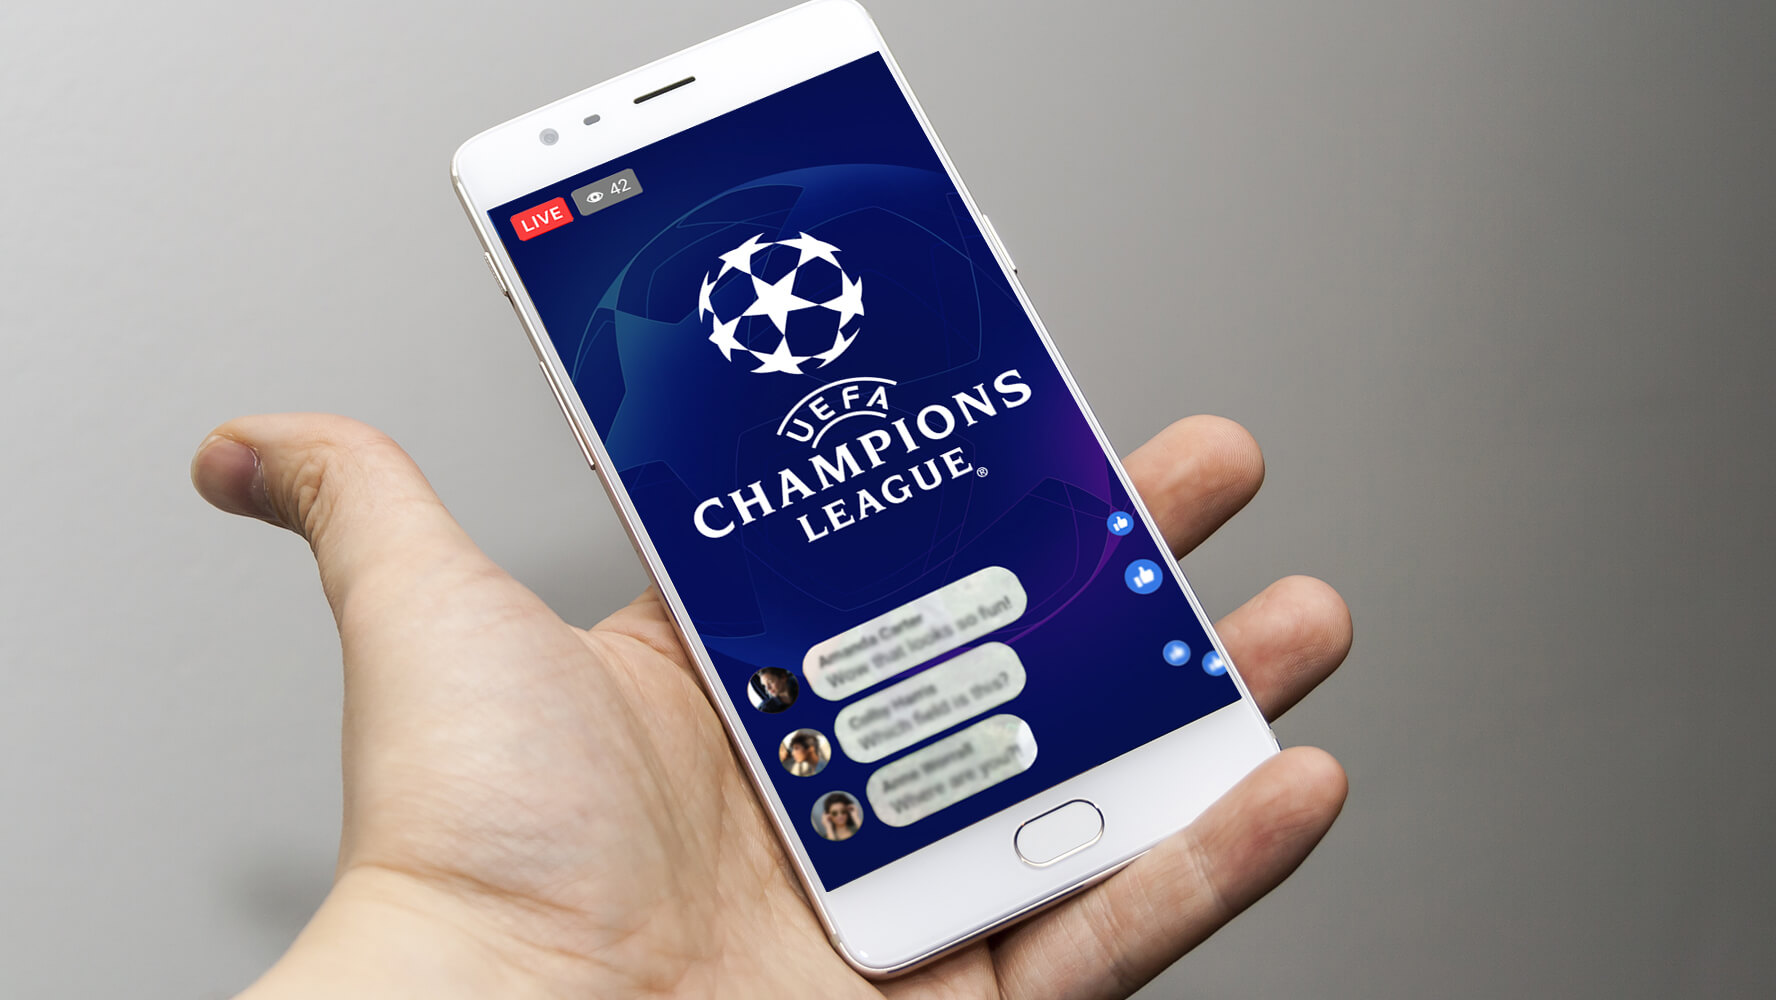 logo champions league na ekranie smartfona trzymanego w dłoni